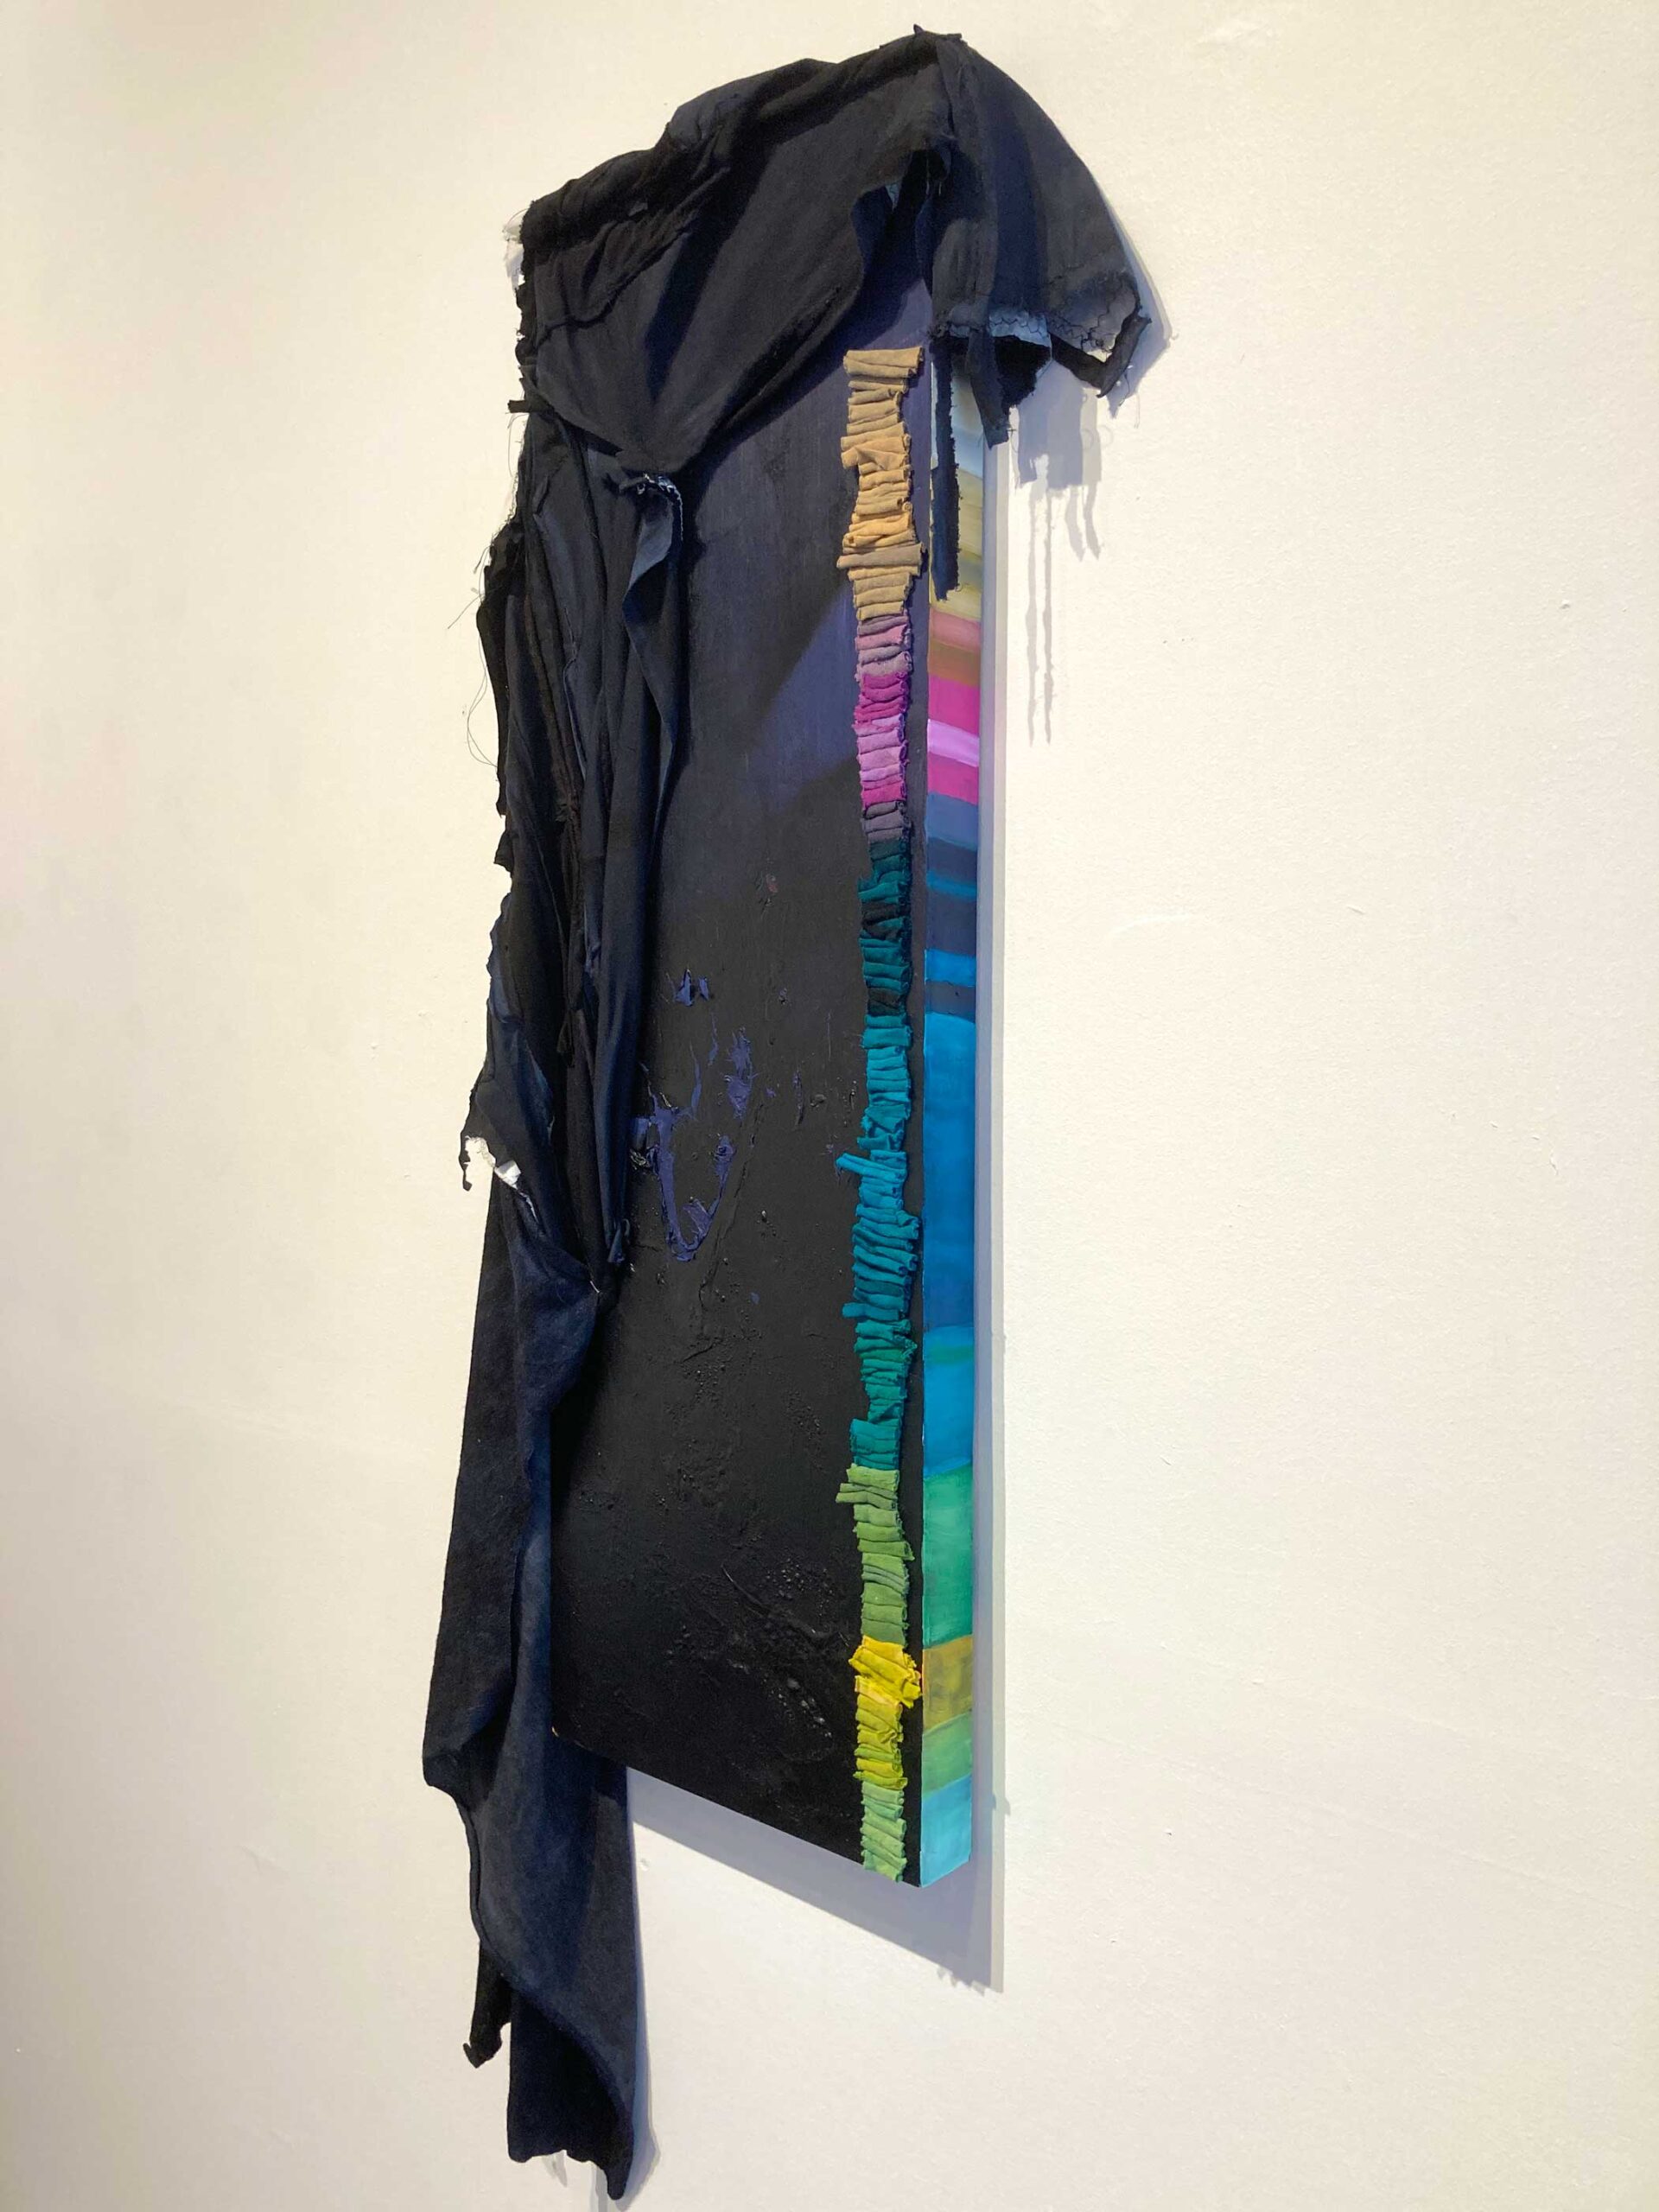 Nightfall, acrylic and fiber work by Elizabeth Rennie and Heather Baumbach. Submerge Bells Gallery 2023